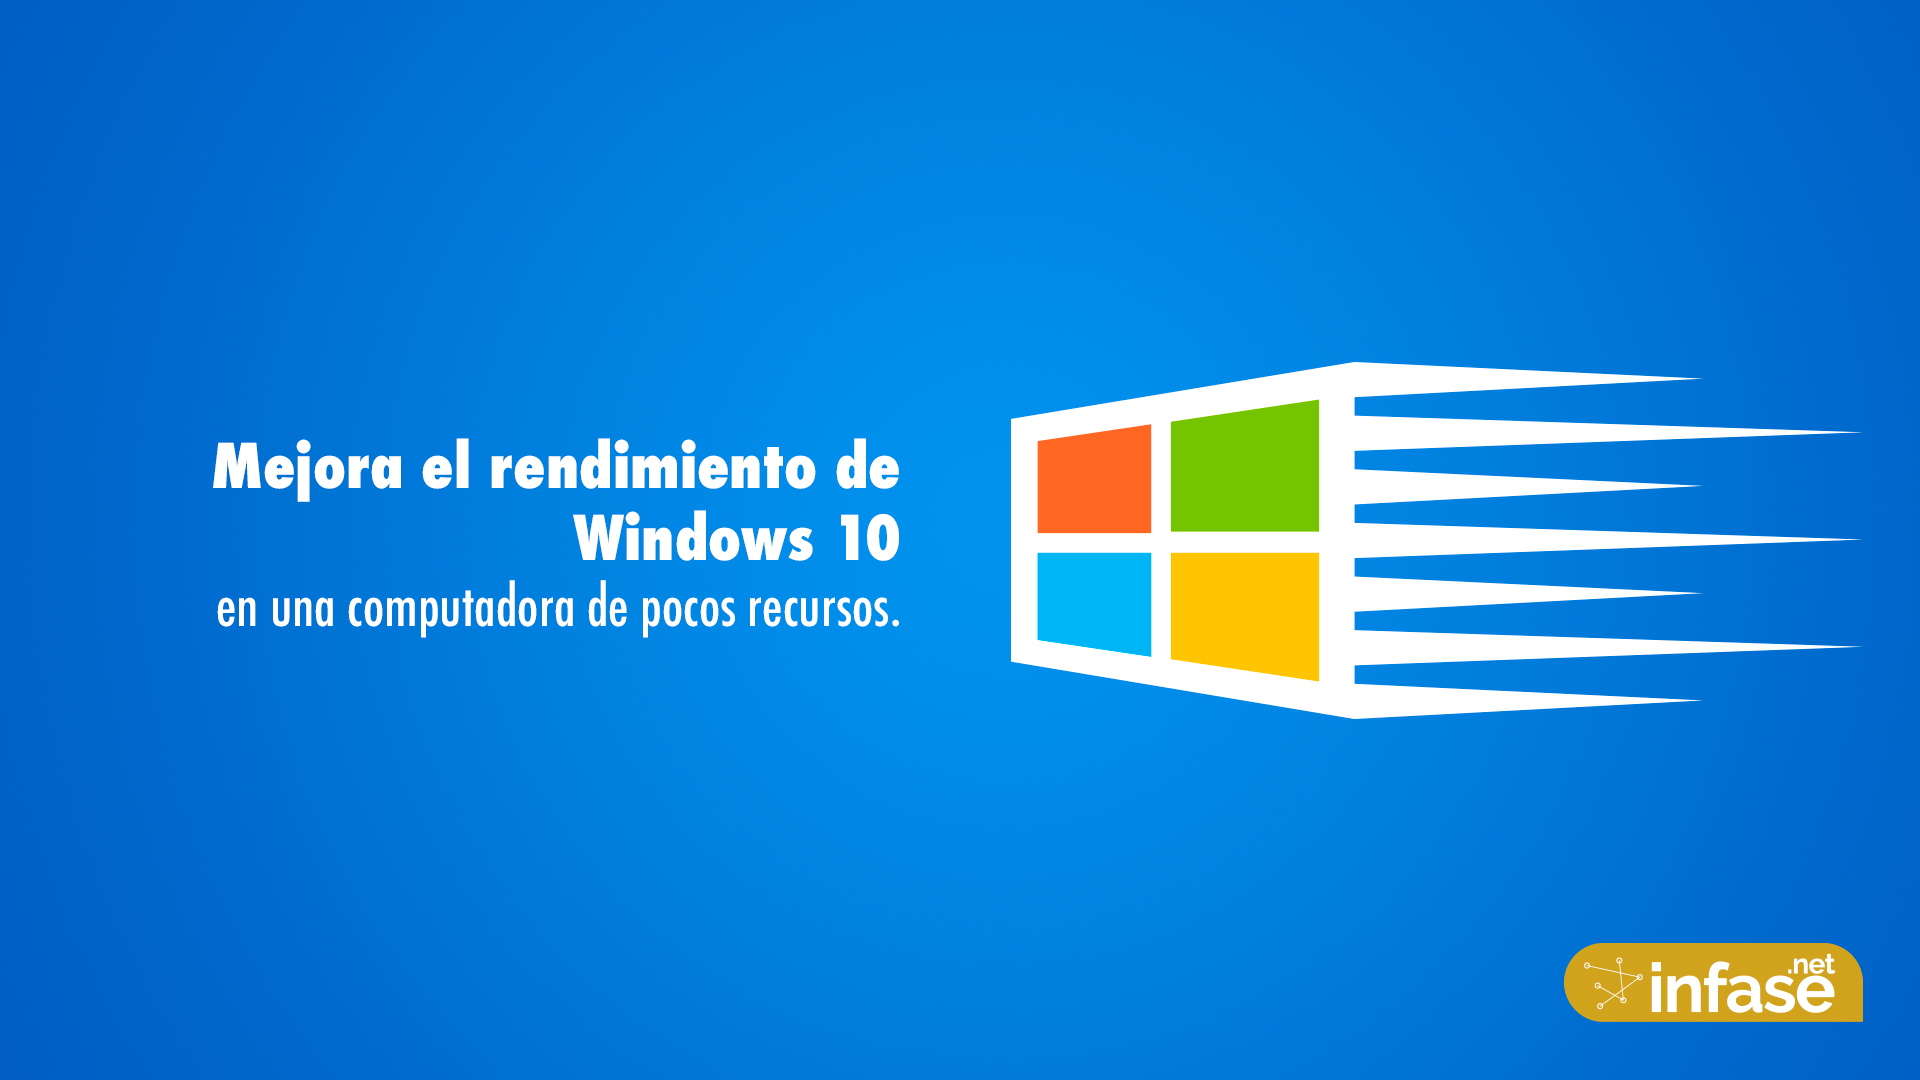 Mejorar el rendimiento de Windows 10